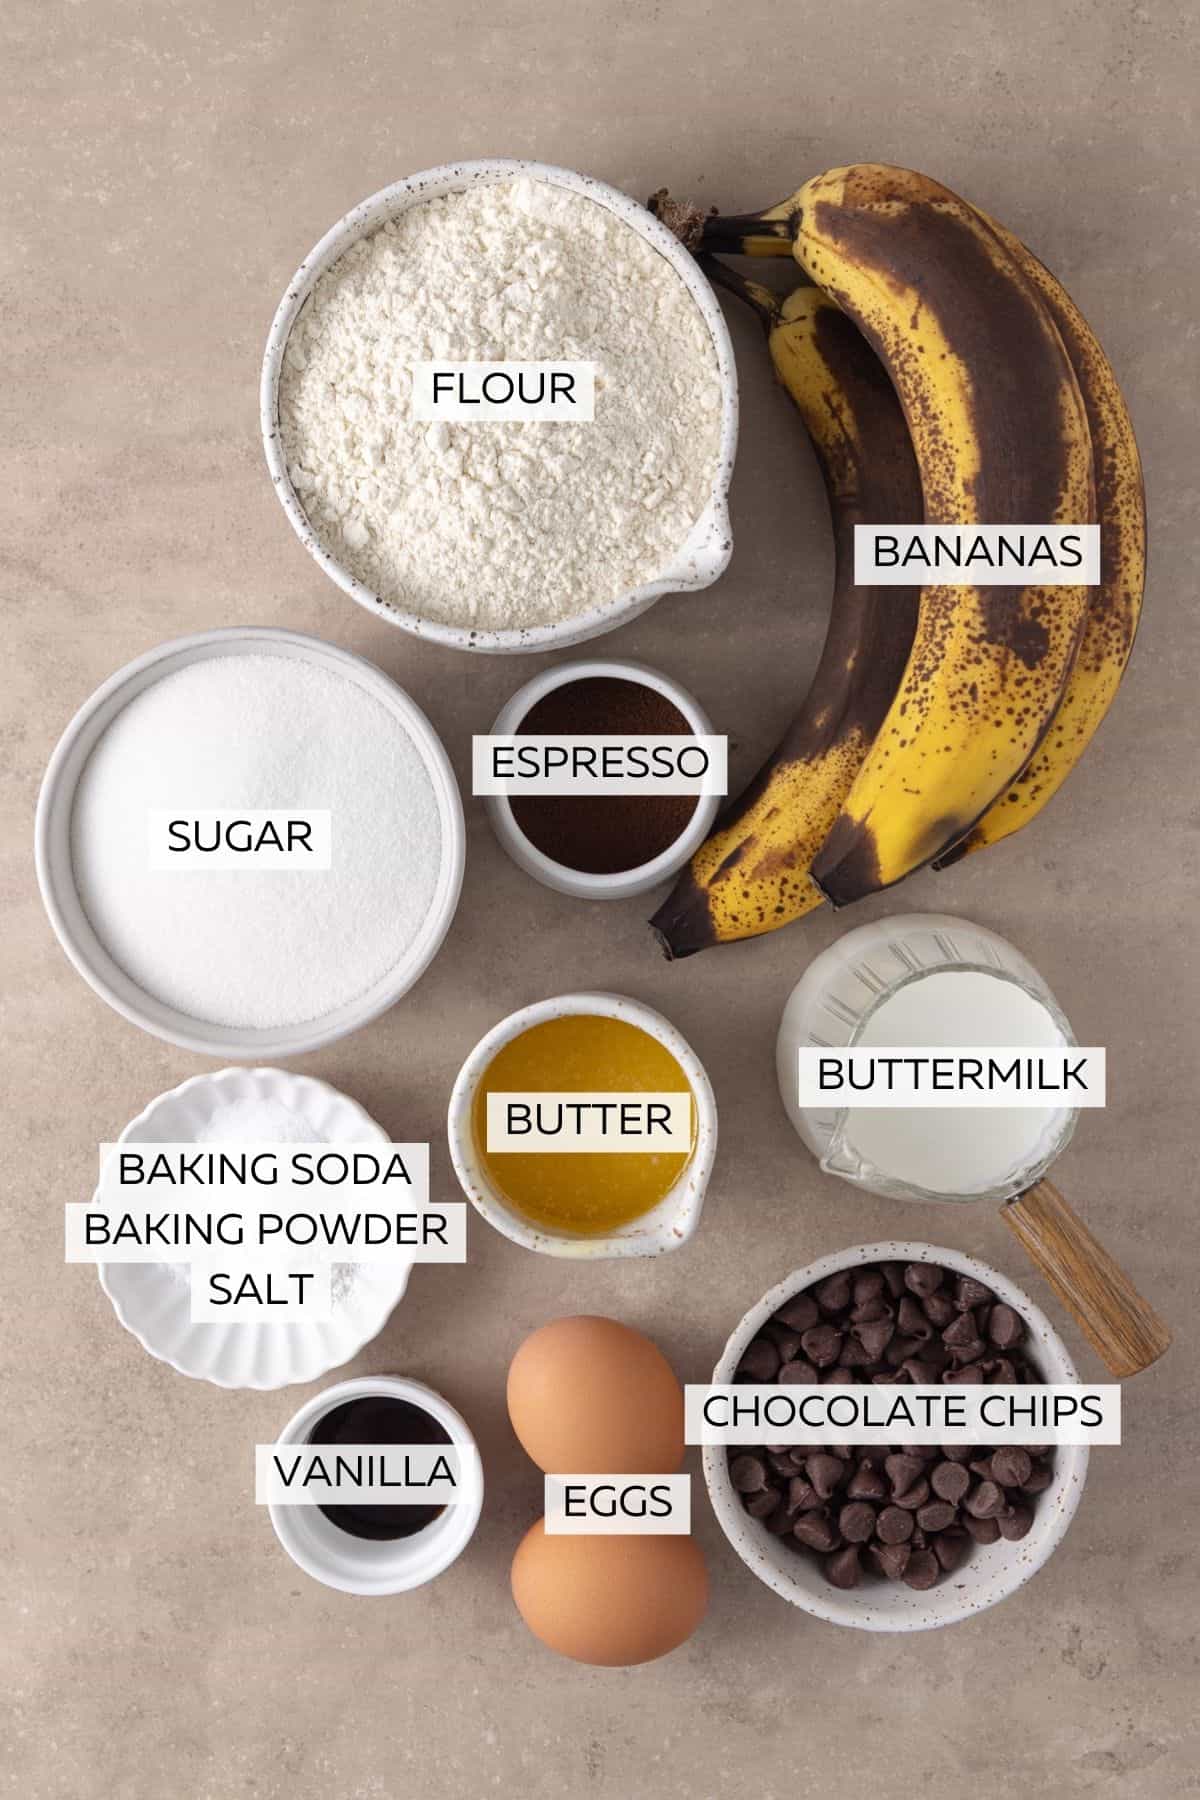 Ingredients for Banana Espresso Muffins - Flour, baking soda, baking powder, salt, bananas, buttermilk, eggs, butter, vanilla, espresso powder and chocolate chips.